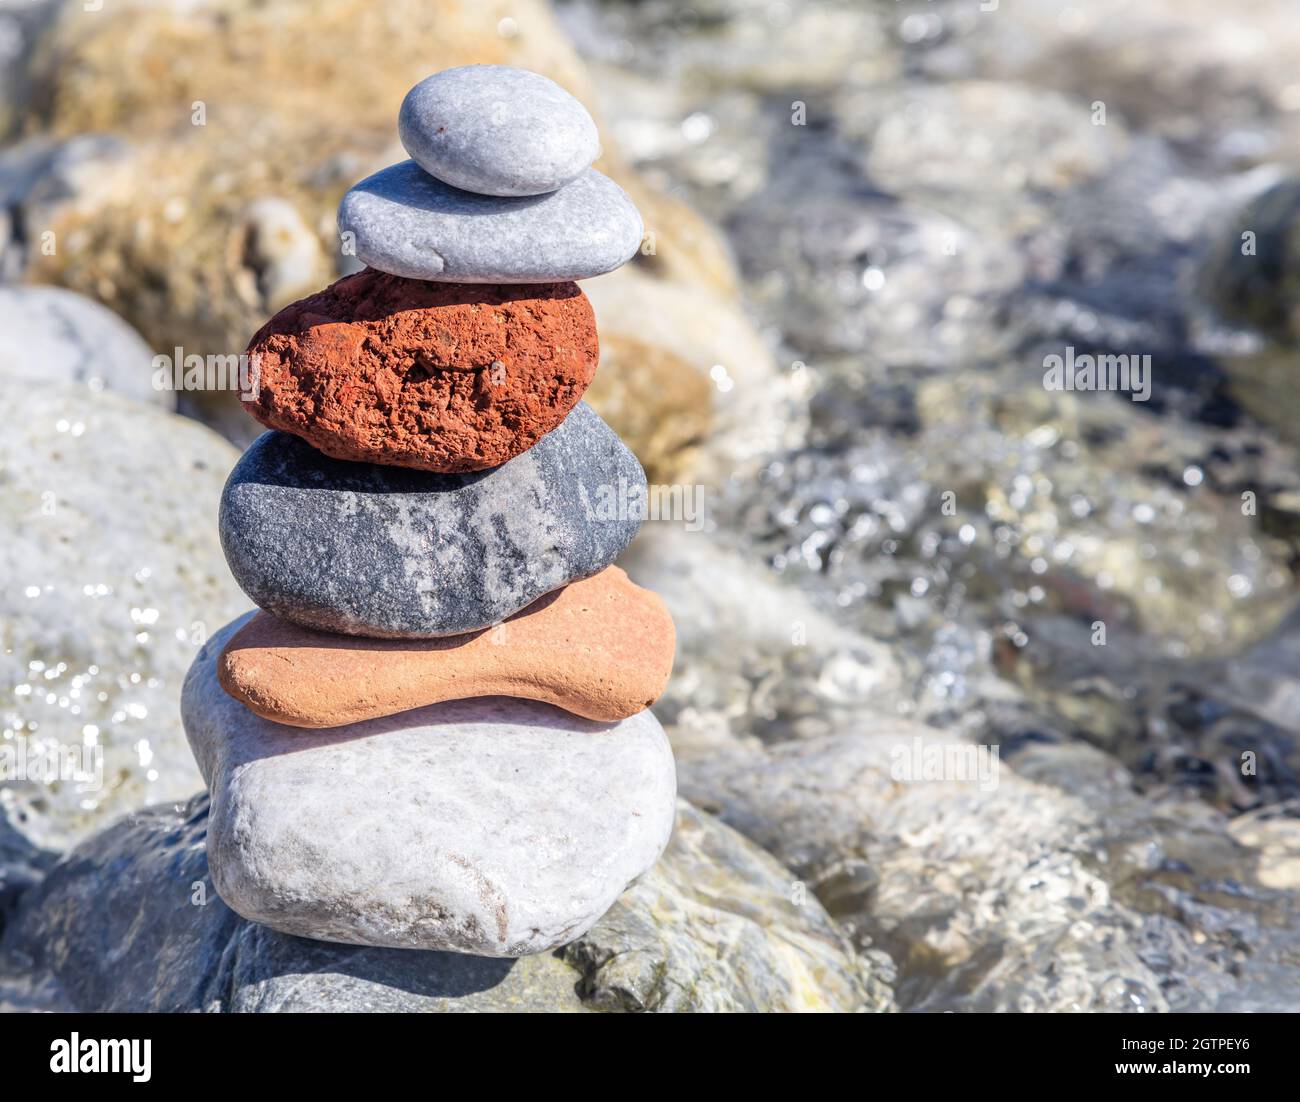 Zen-Balancesteine, glatter Felsturm auf nassem Kiesgrund gestapelt, sonniger Tag an der Küste. Harmonie und Frieden am Meer Stockfoto